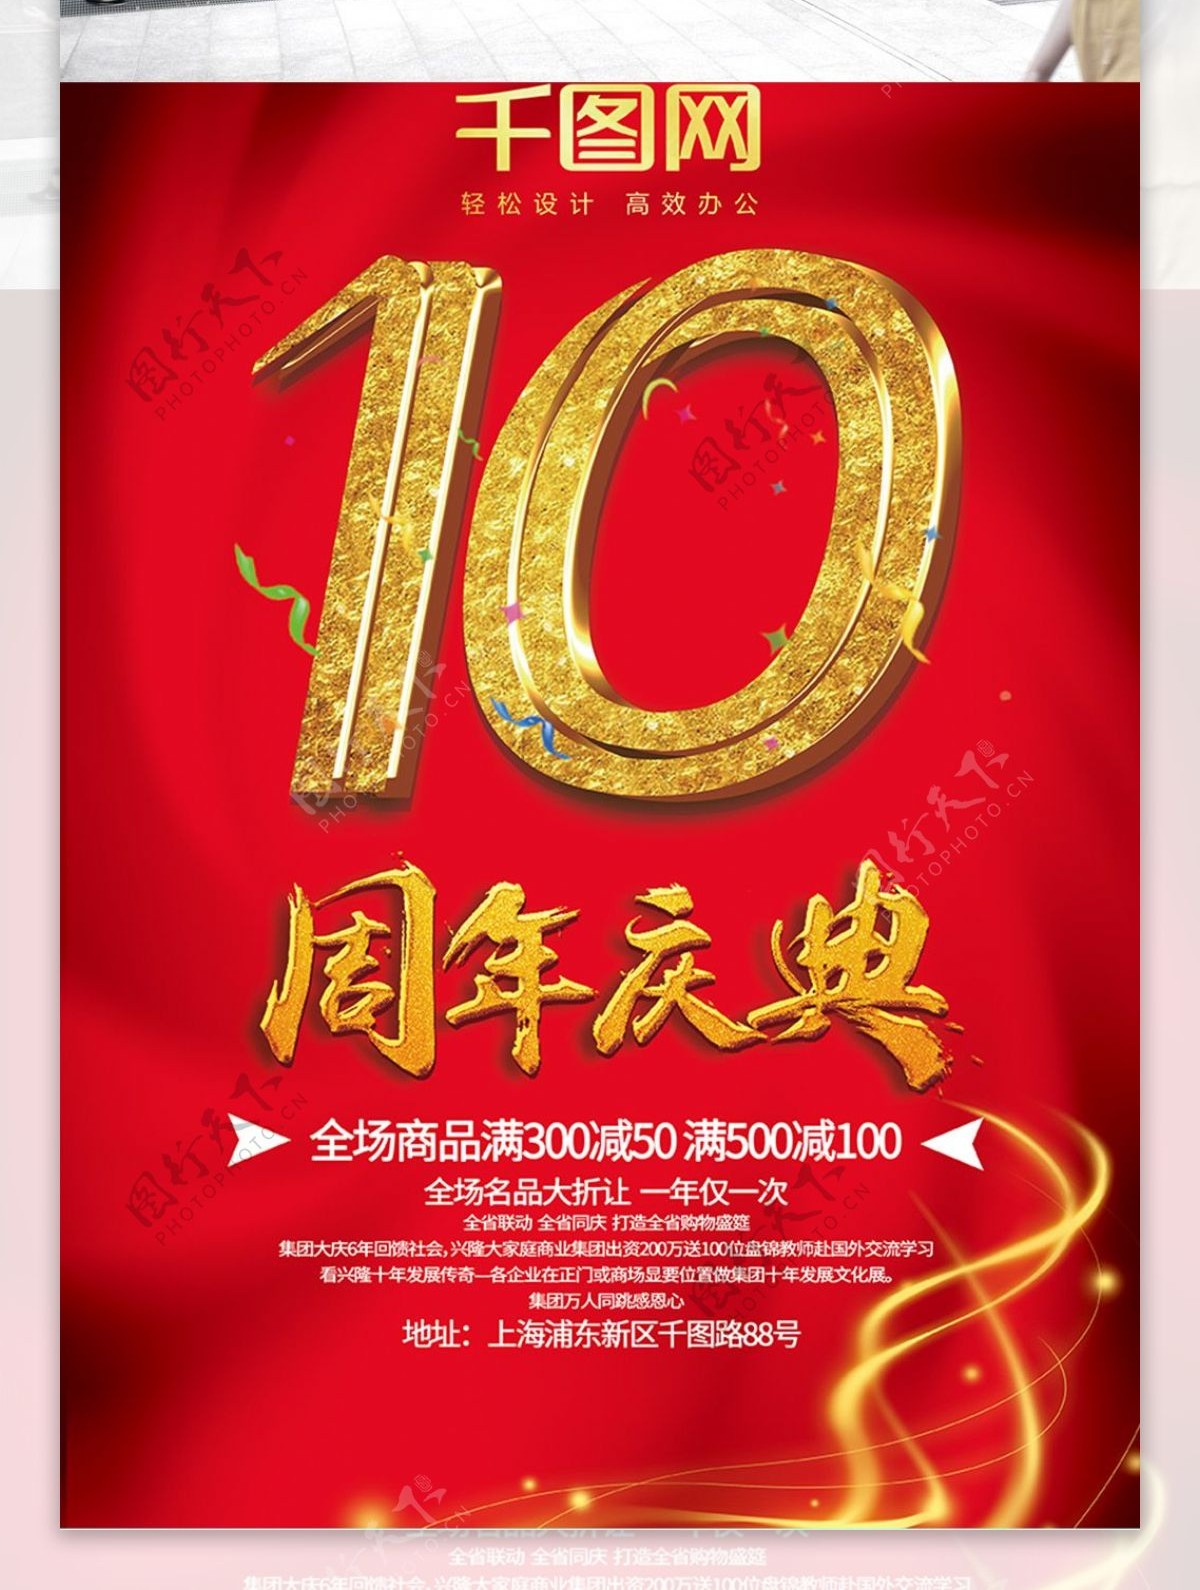 金色大气喜庆10周年庆促销海报